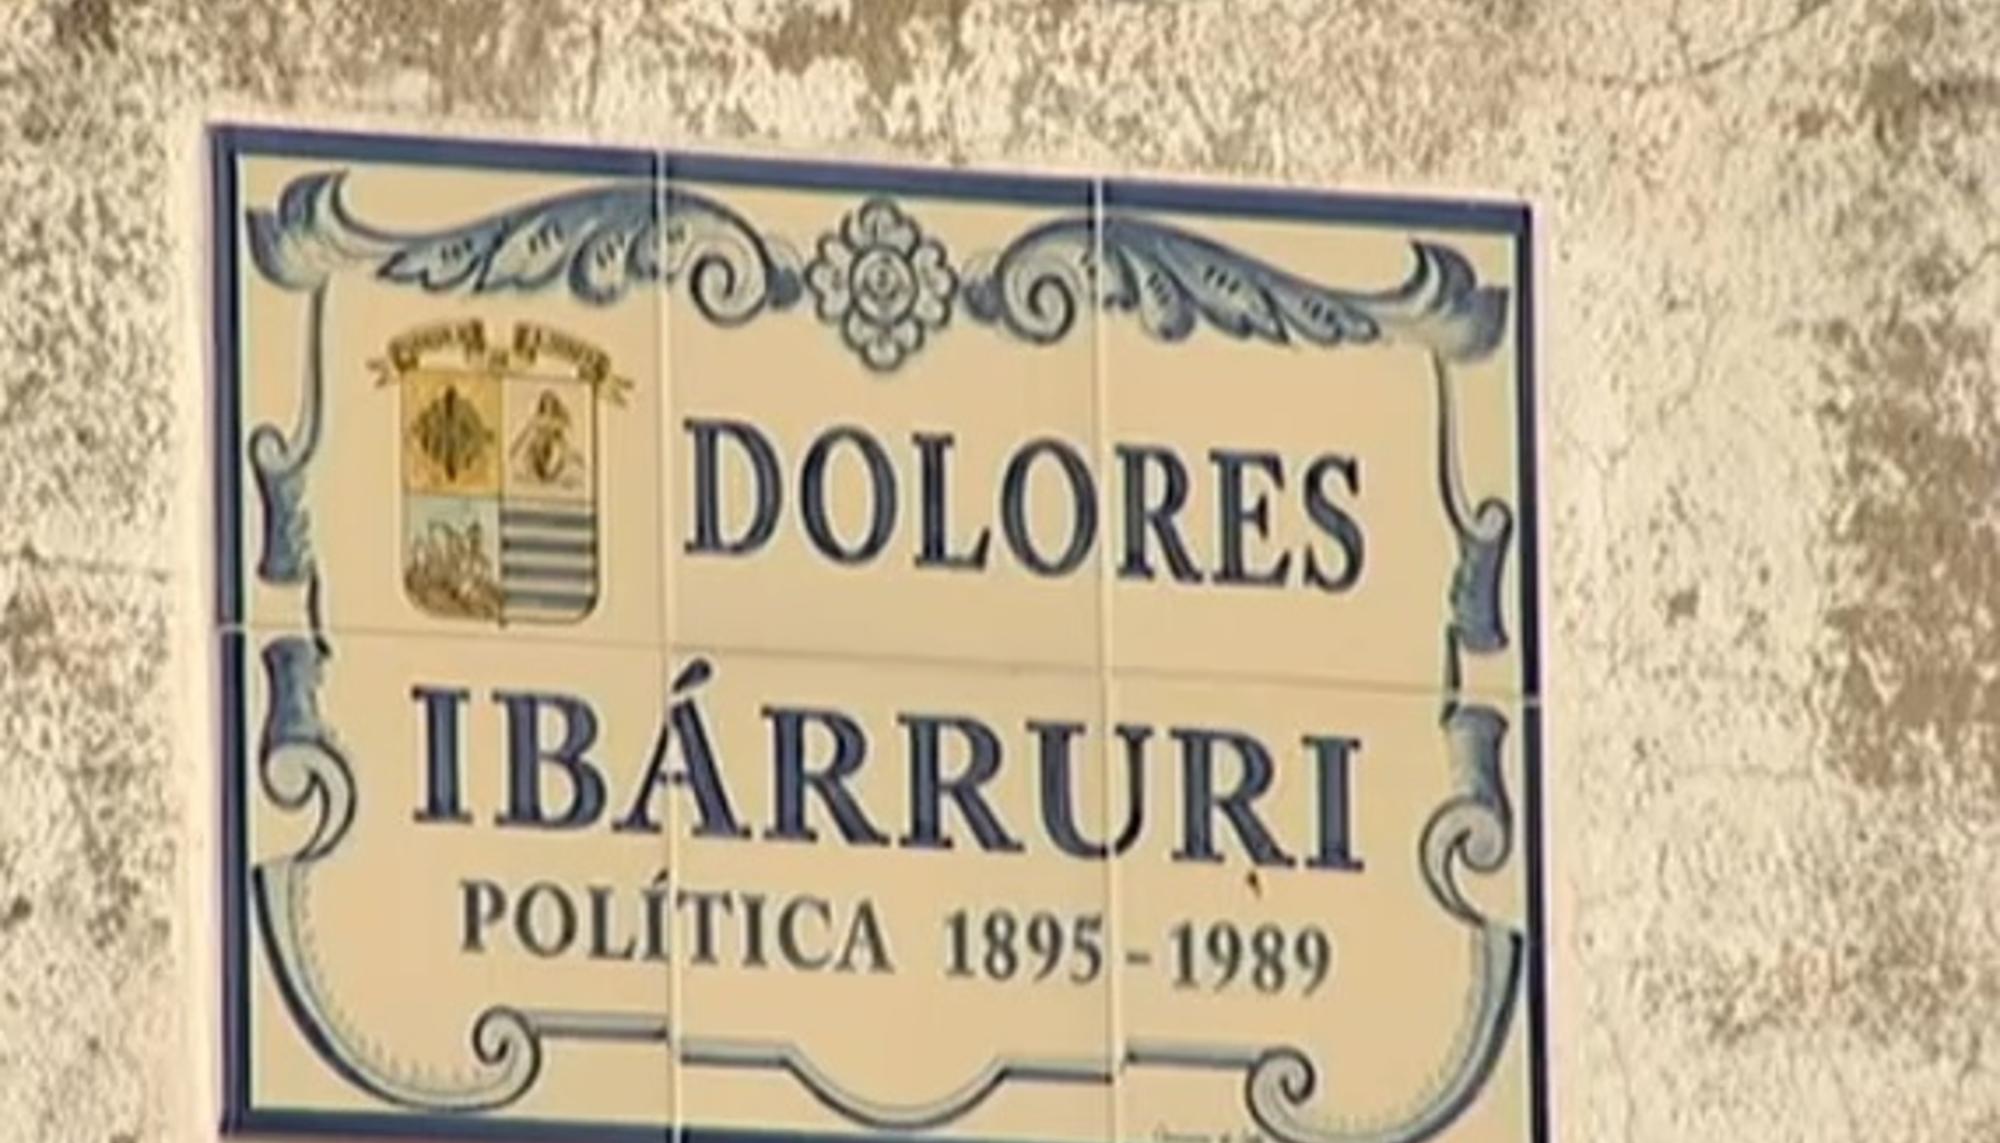 Placa conmemorativa de Dolores Ibárruri en Villanueva de la Serena 